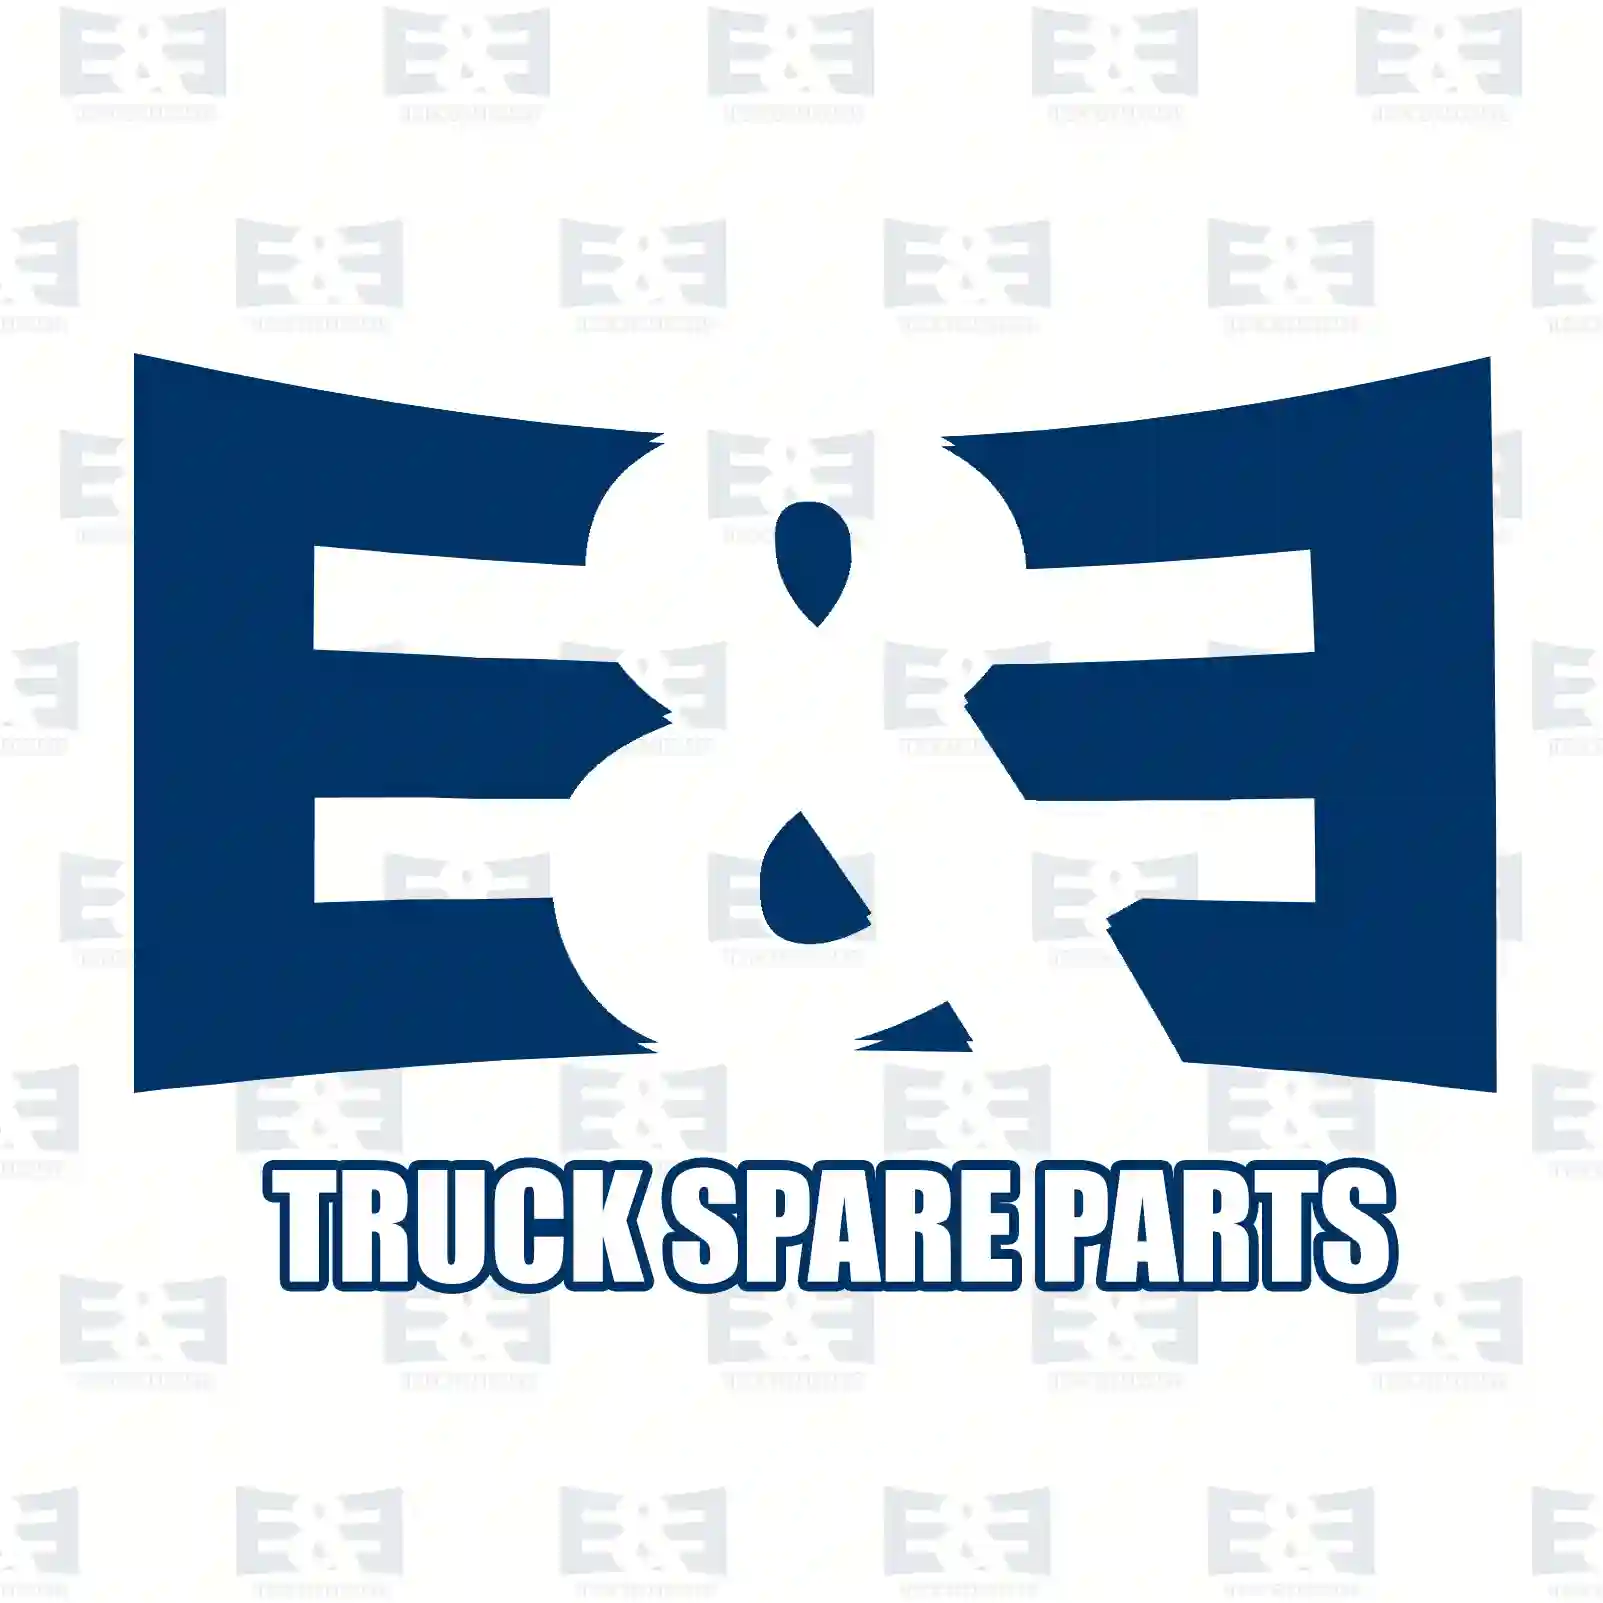 Brake shield, 2E2296030, 81501015137, 2V5501525 ||  2E2296030 E&E Truck Spare Parts | Truck Spare Parts, Auotomotive Spare Parts Brake shield, 2E2296030, 81501015137, 2V5501525 ||  2E2296030 E&E Truck Spare Parts | Truck Spare Parts, Auotomotive Spare Parts